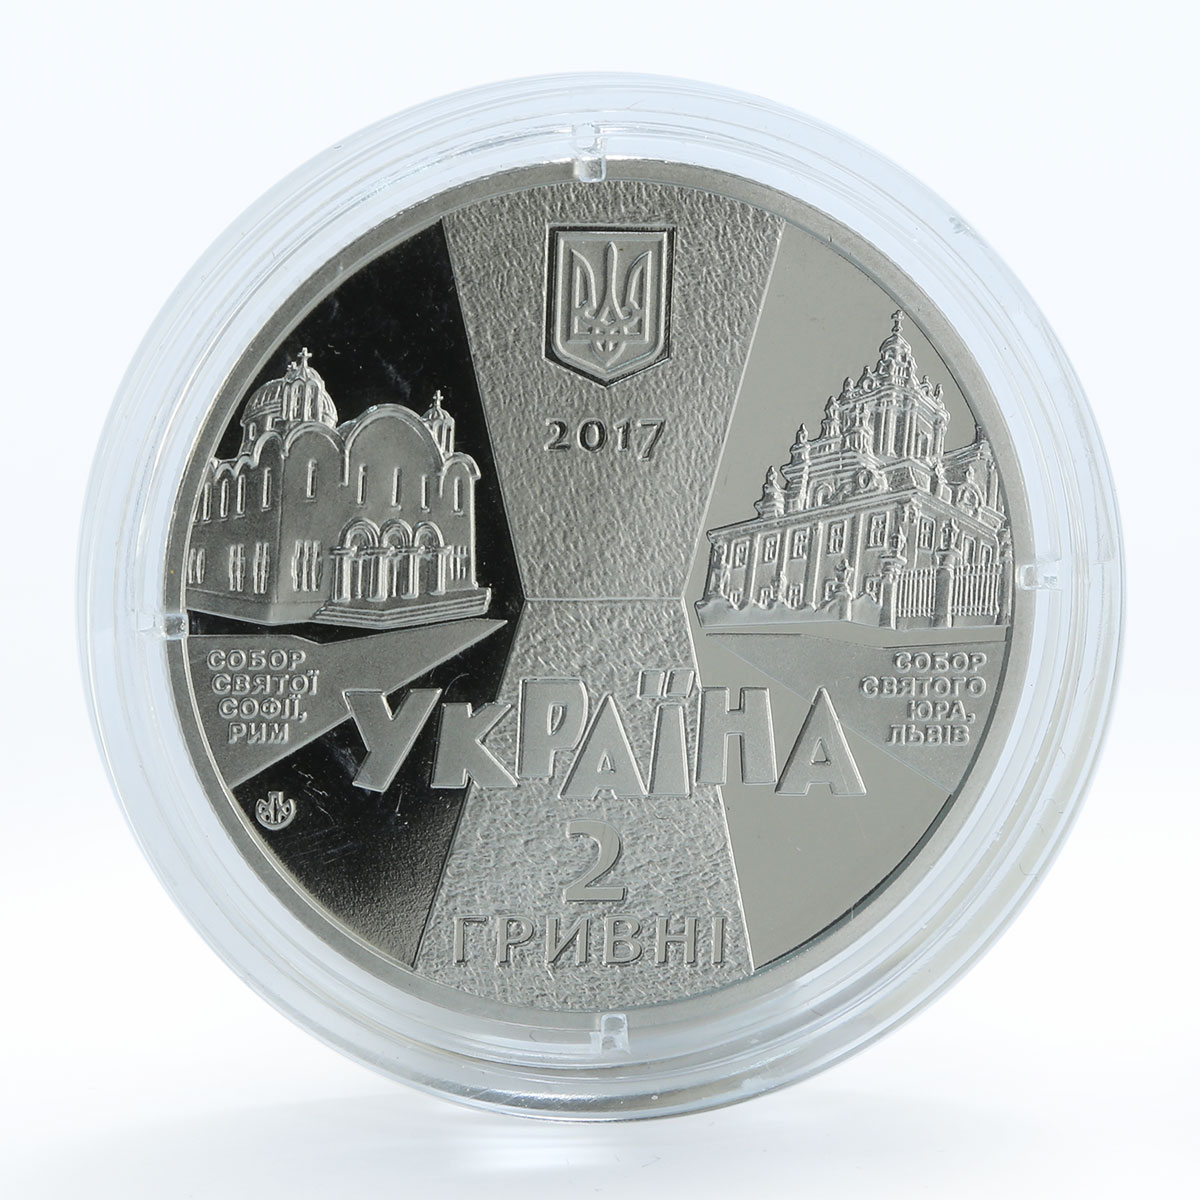 Ukraine 2 grivnas Outstanding personalities of Ukraine Joseph Blind coin 2017